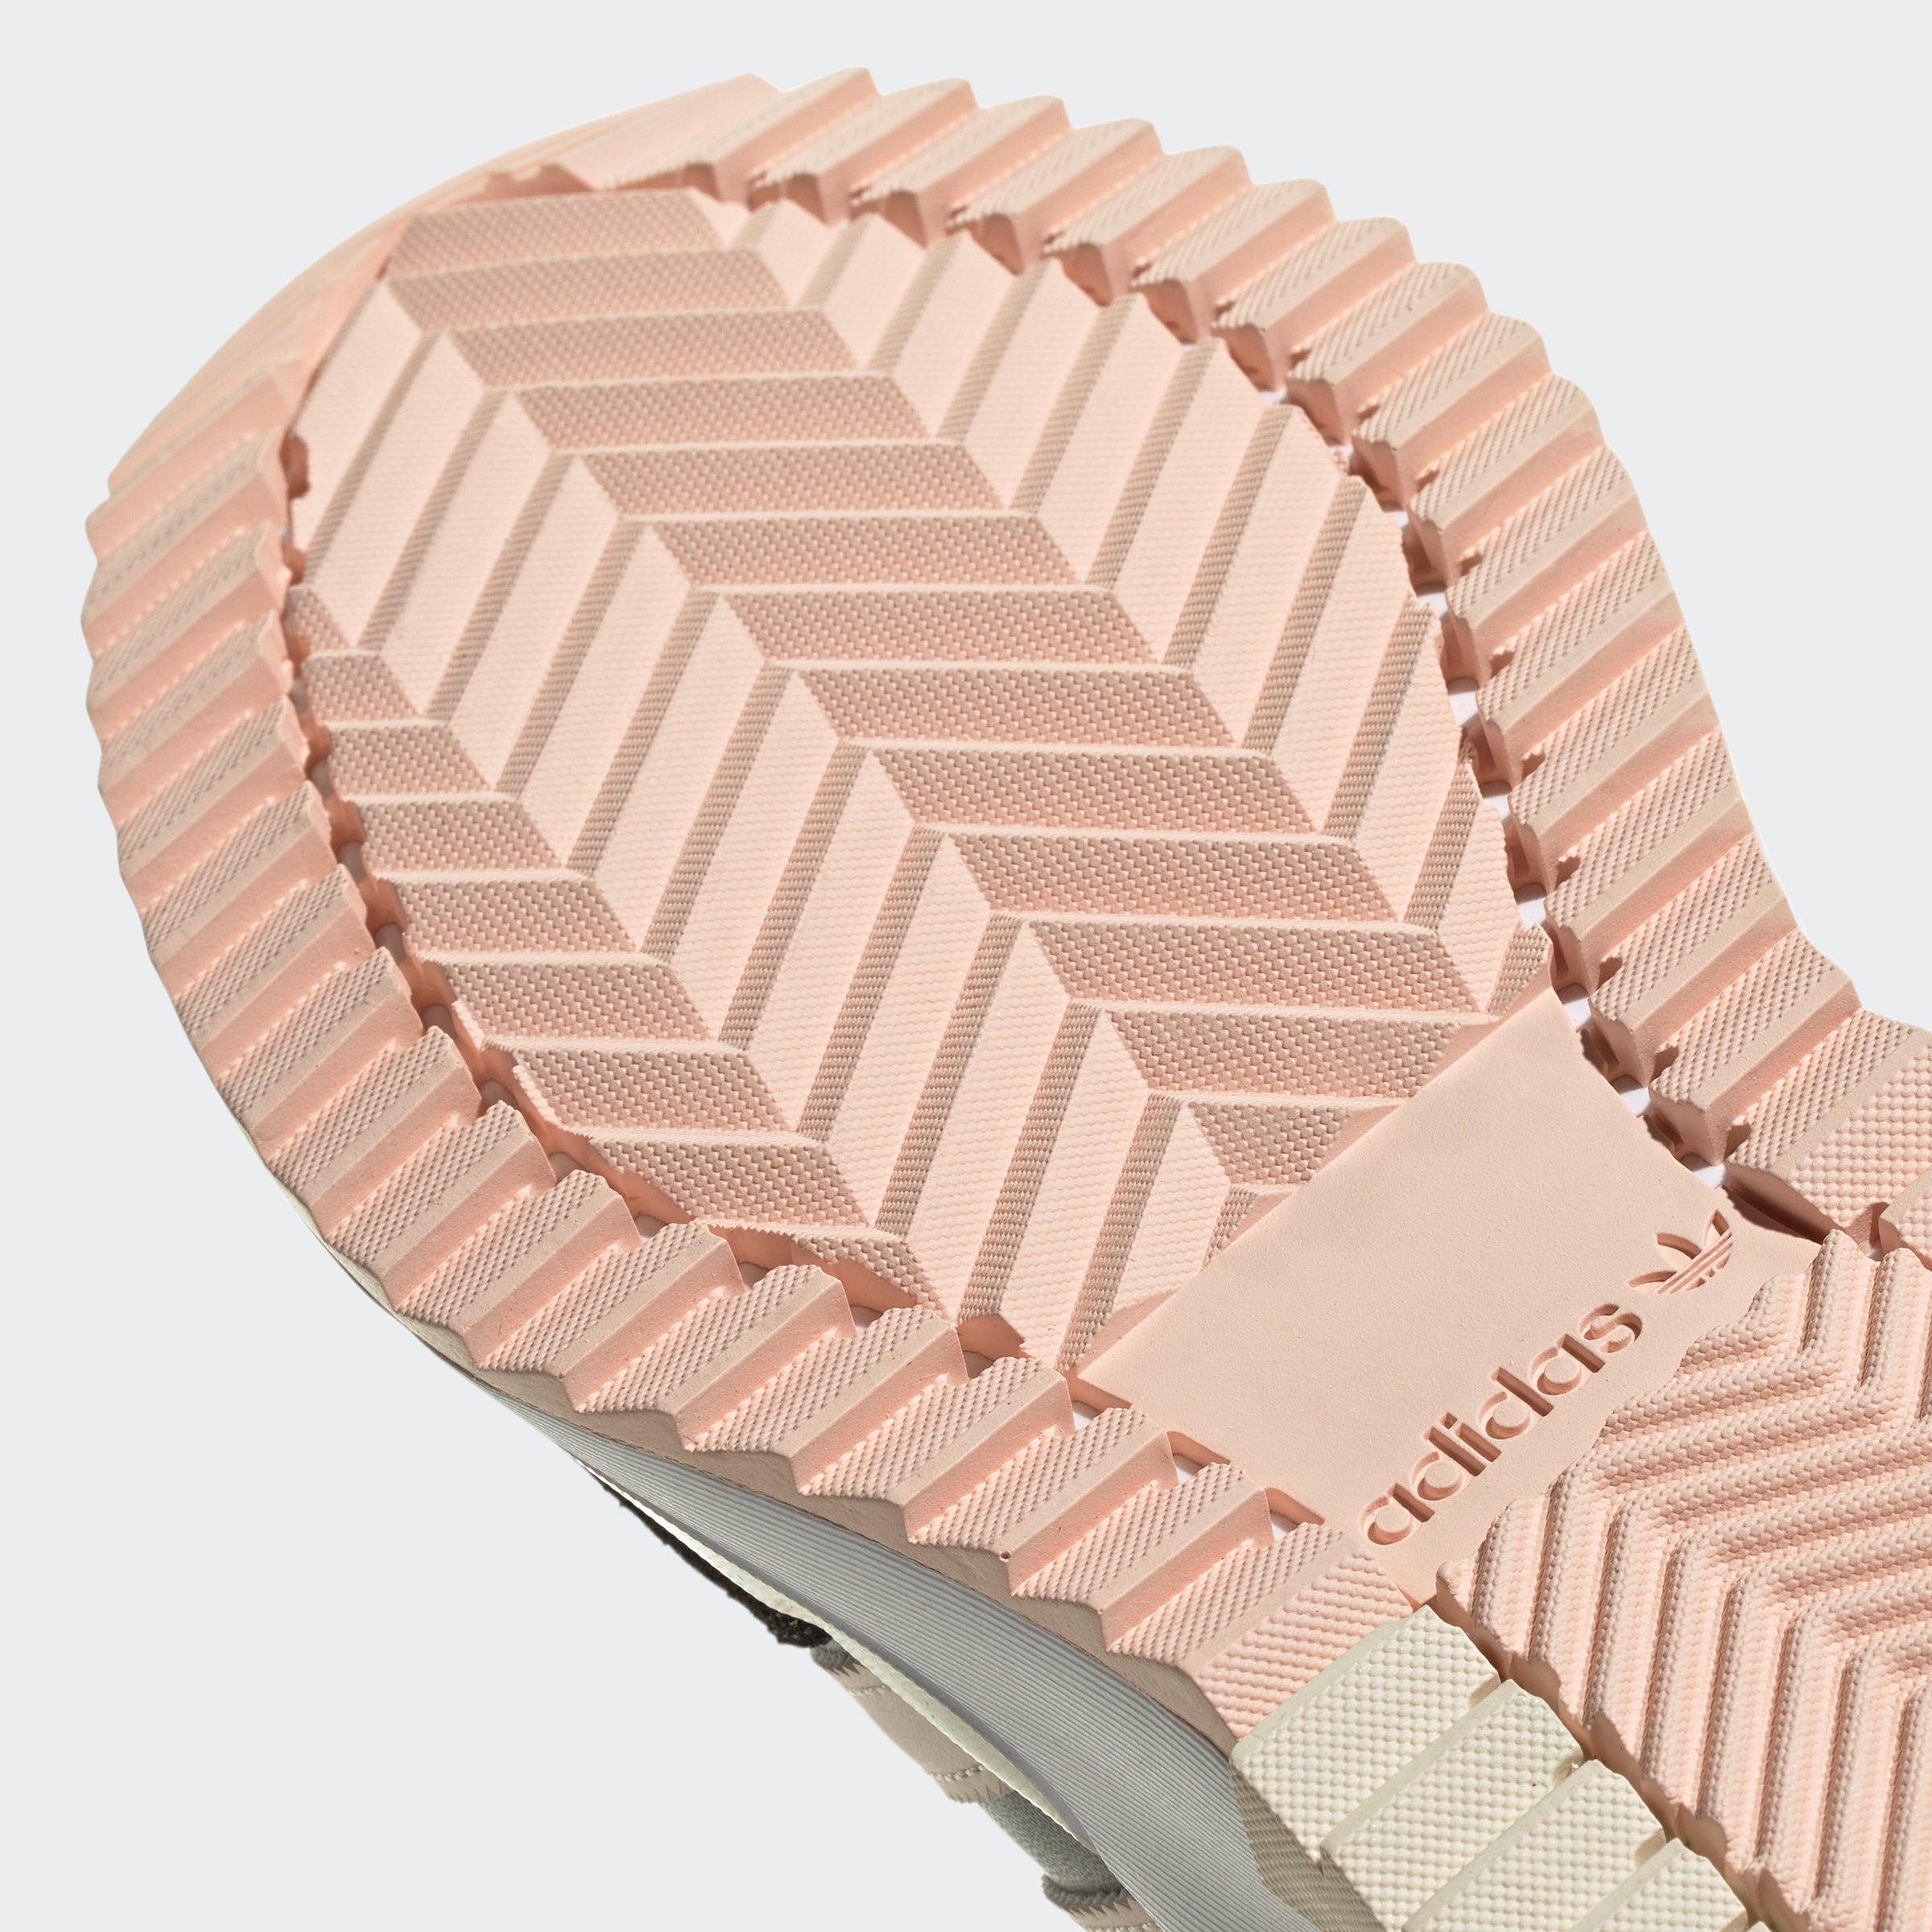 adidas Originals RETROPY F2 Five Sneaker Grey Wonder Quartz / / Carbon